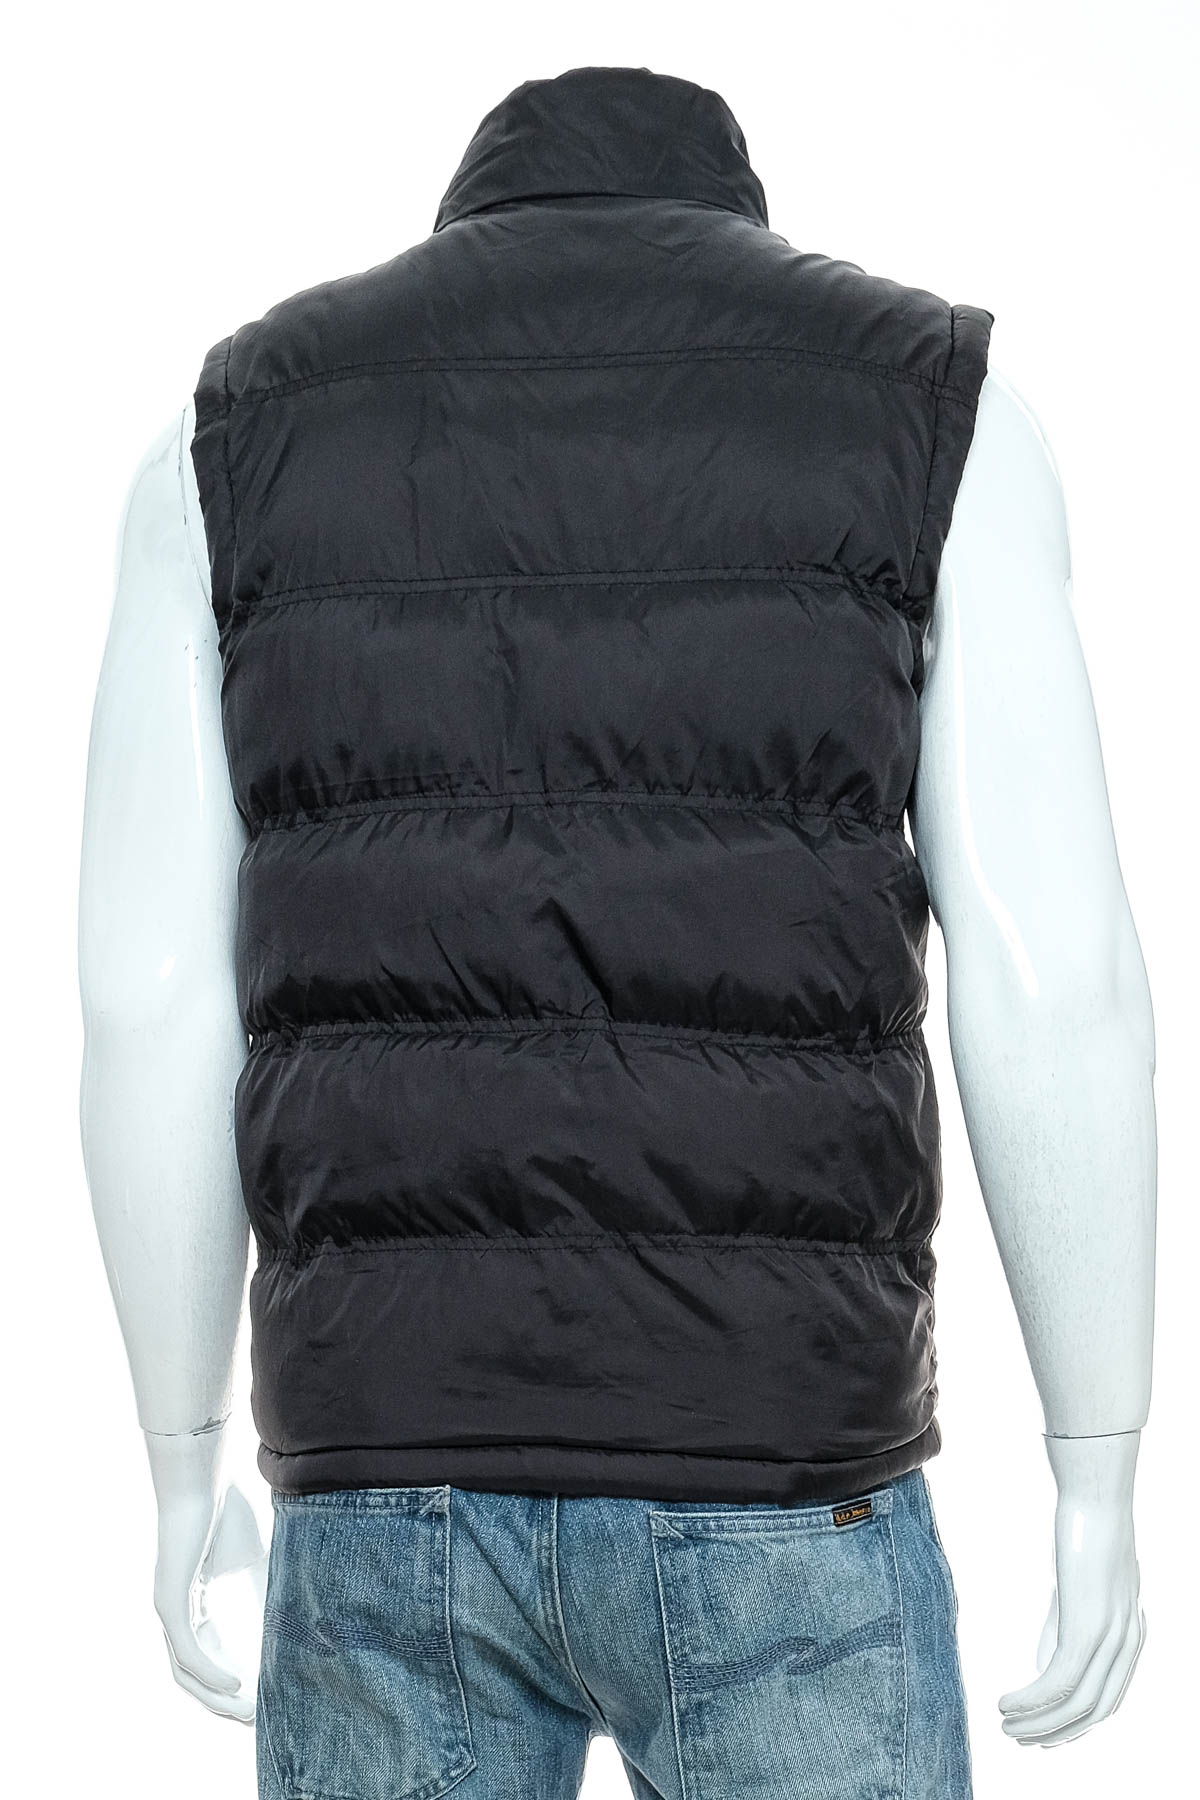 Men's vest - FASHION DESIGN - 1